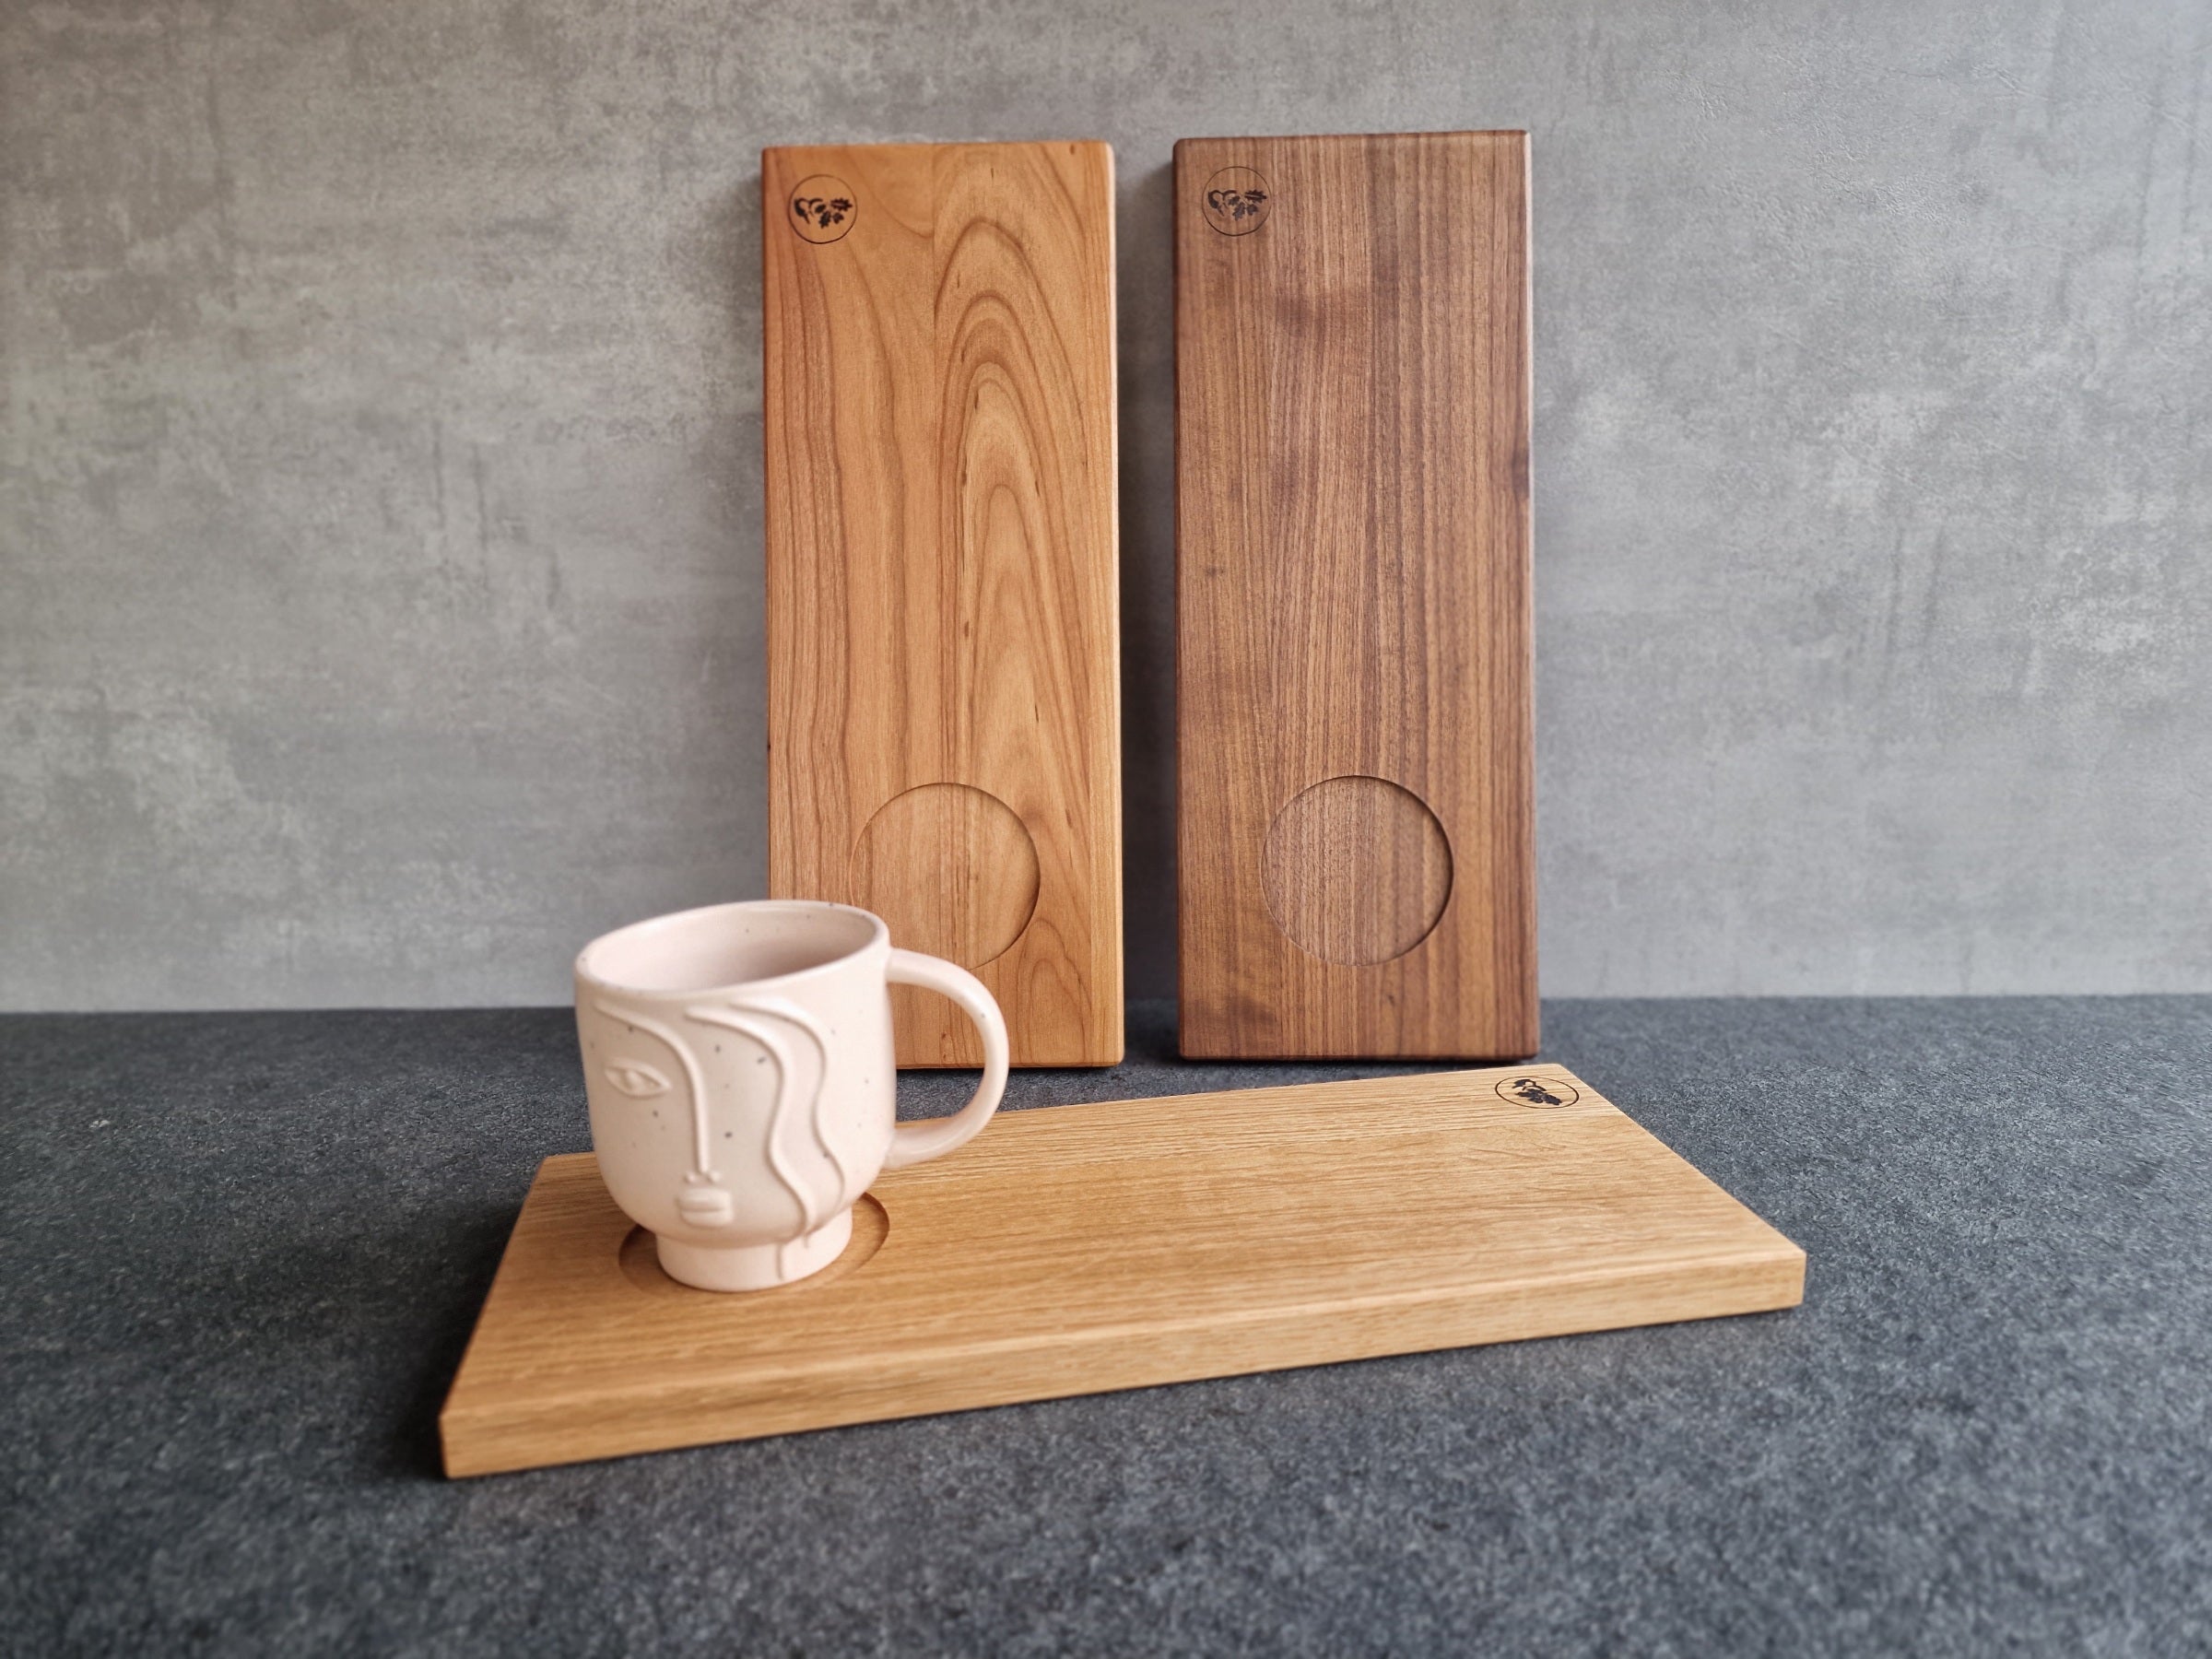 Cappuccino-Tablett aus Kirschbaum und Nussbaum an einer Wand angelehnt. Im Vordergrund ein Holztablett aus Eiche mit einer großen Tasse mit Gesicht.